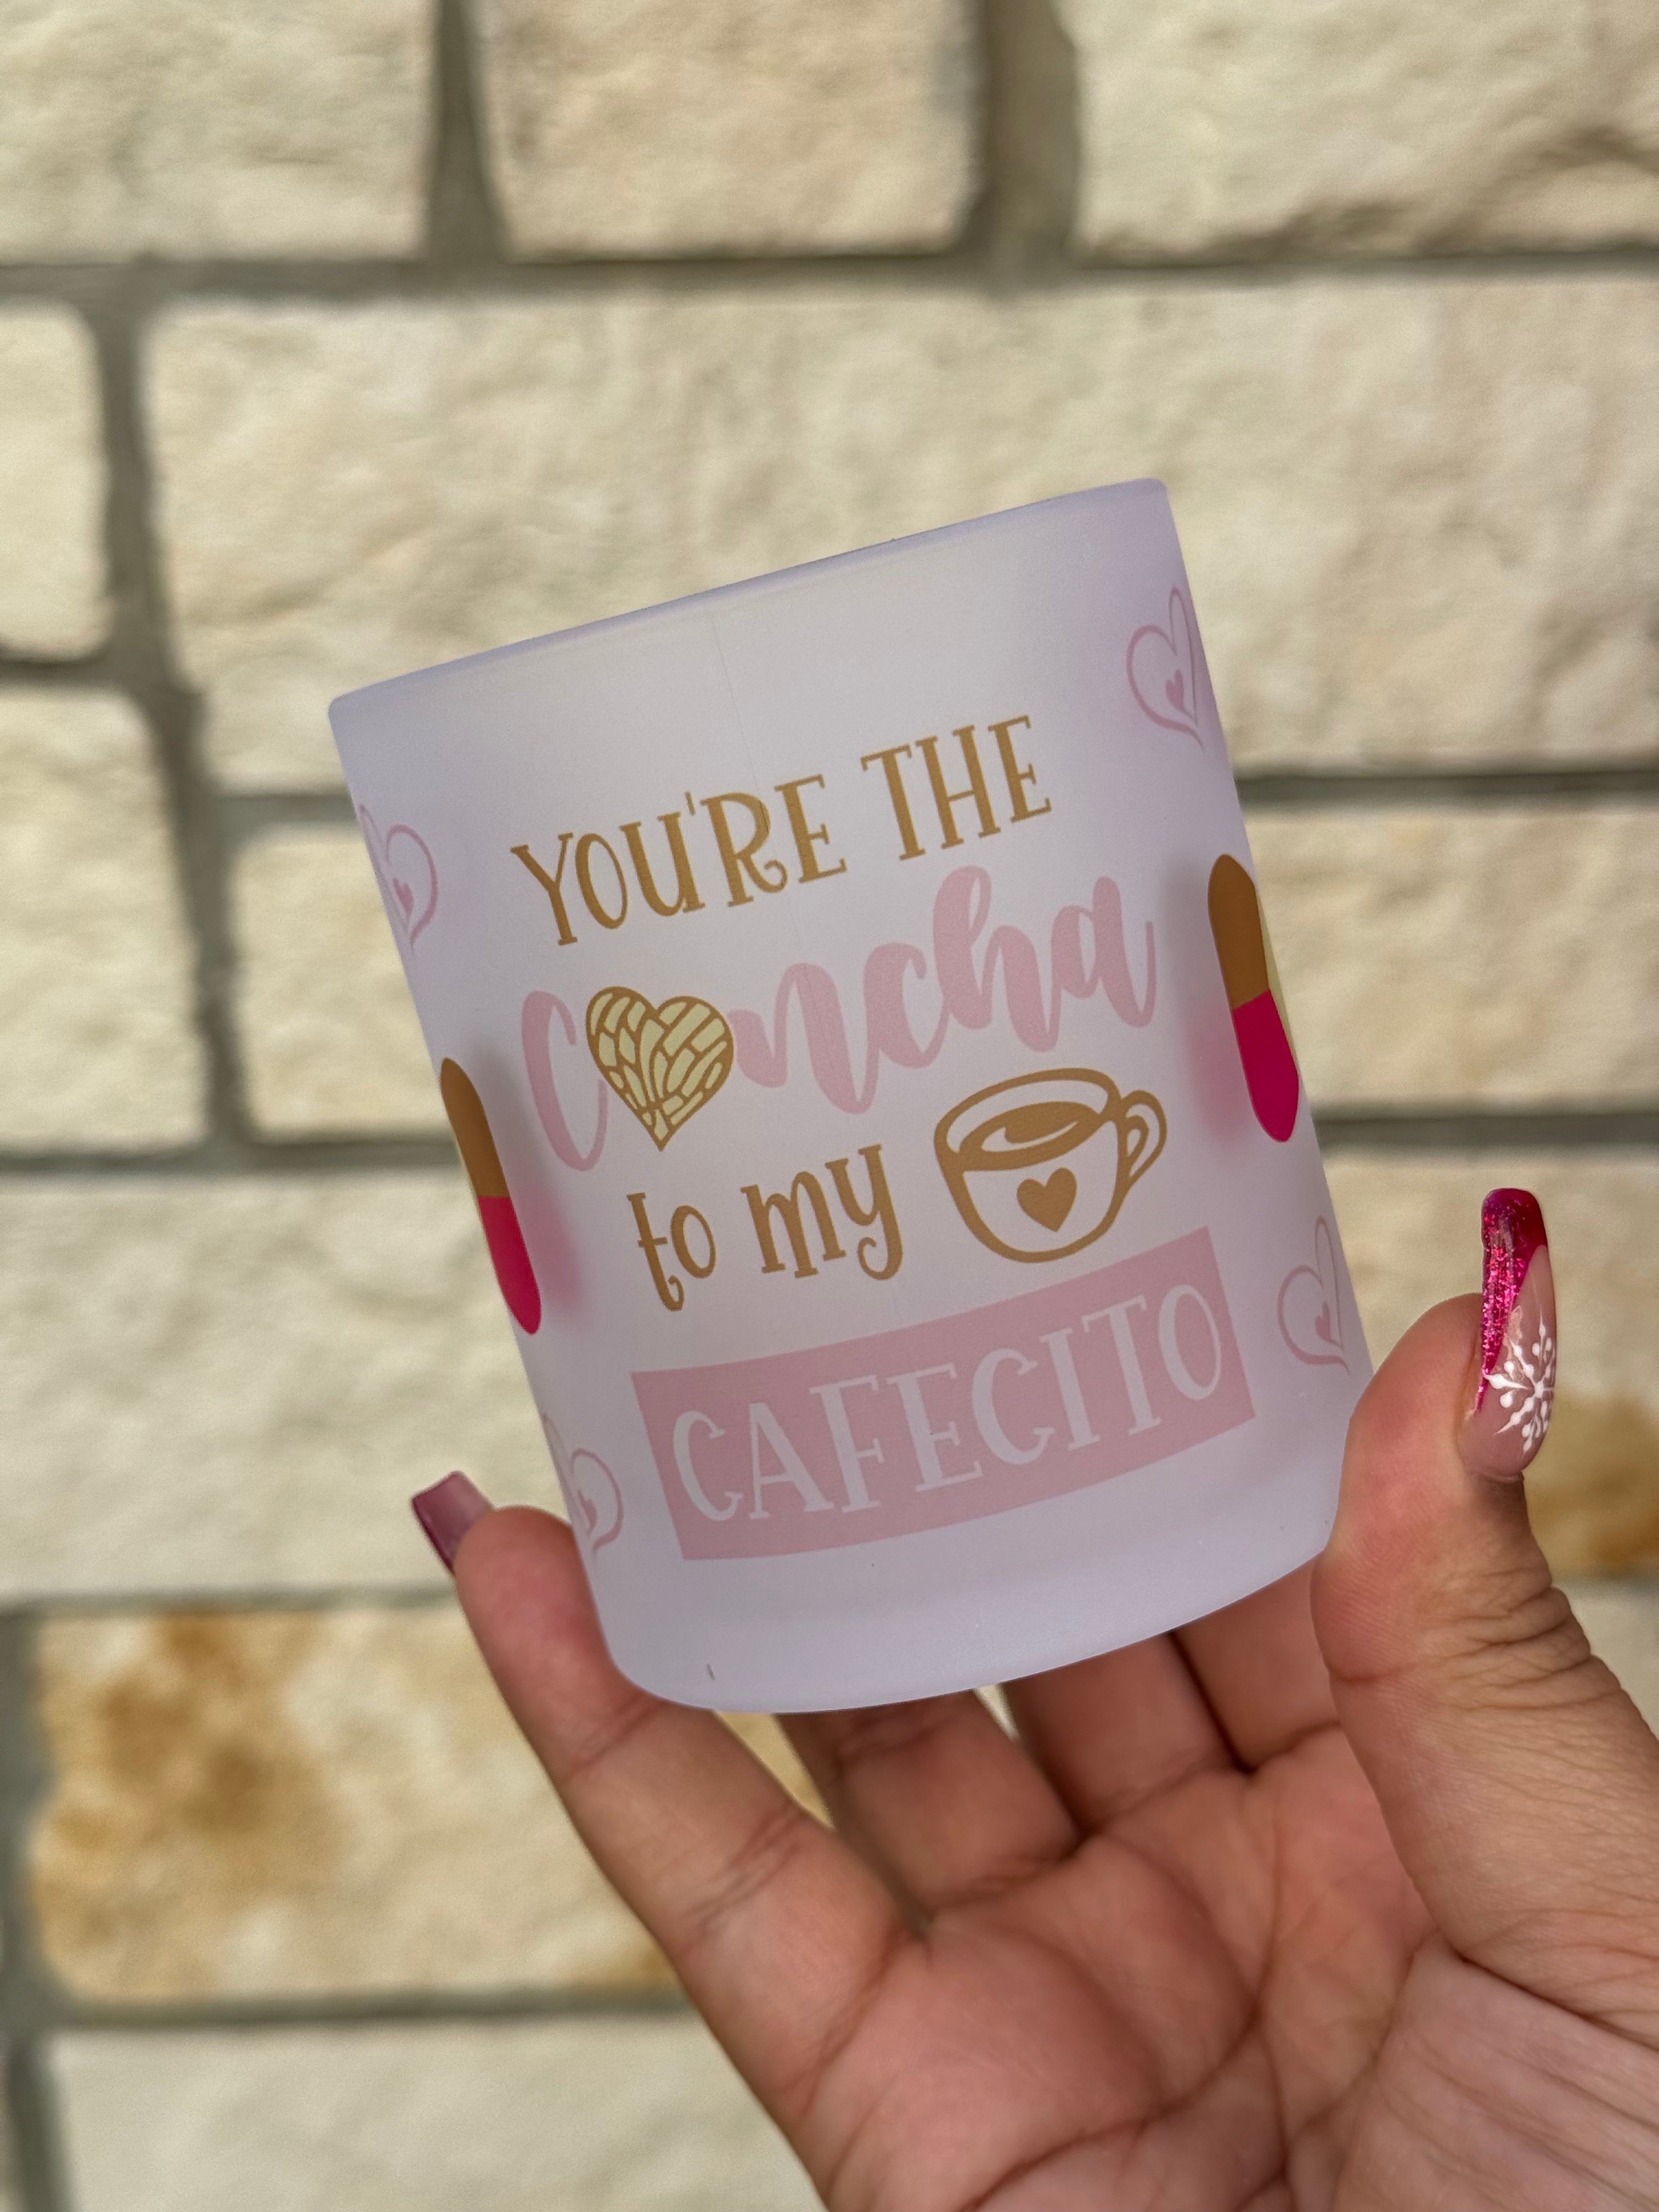 You are the concha to my cafecito 11oz mug